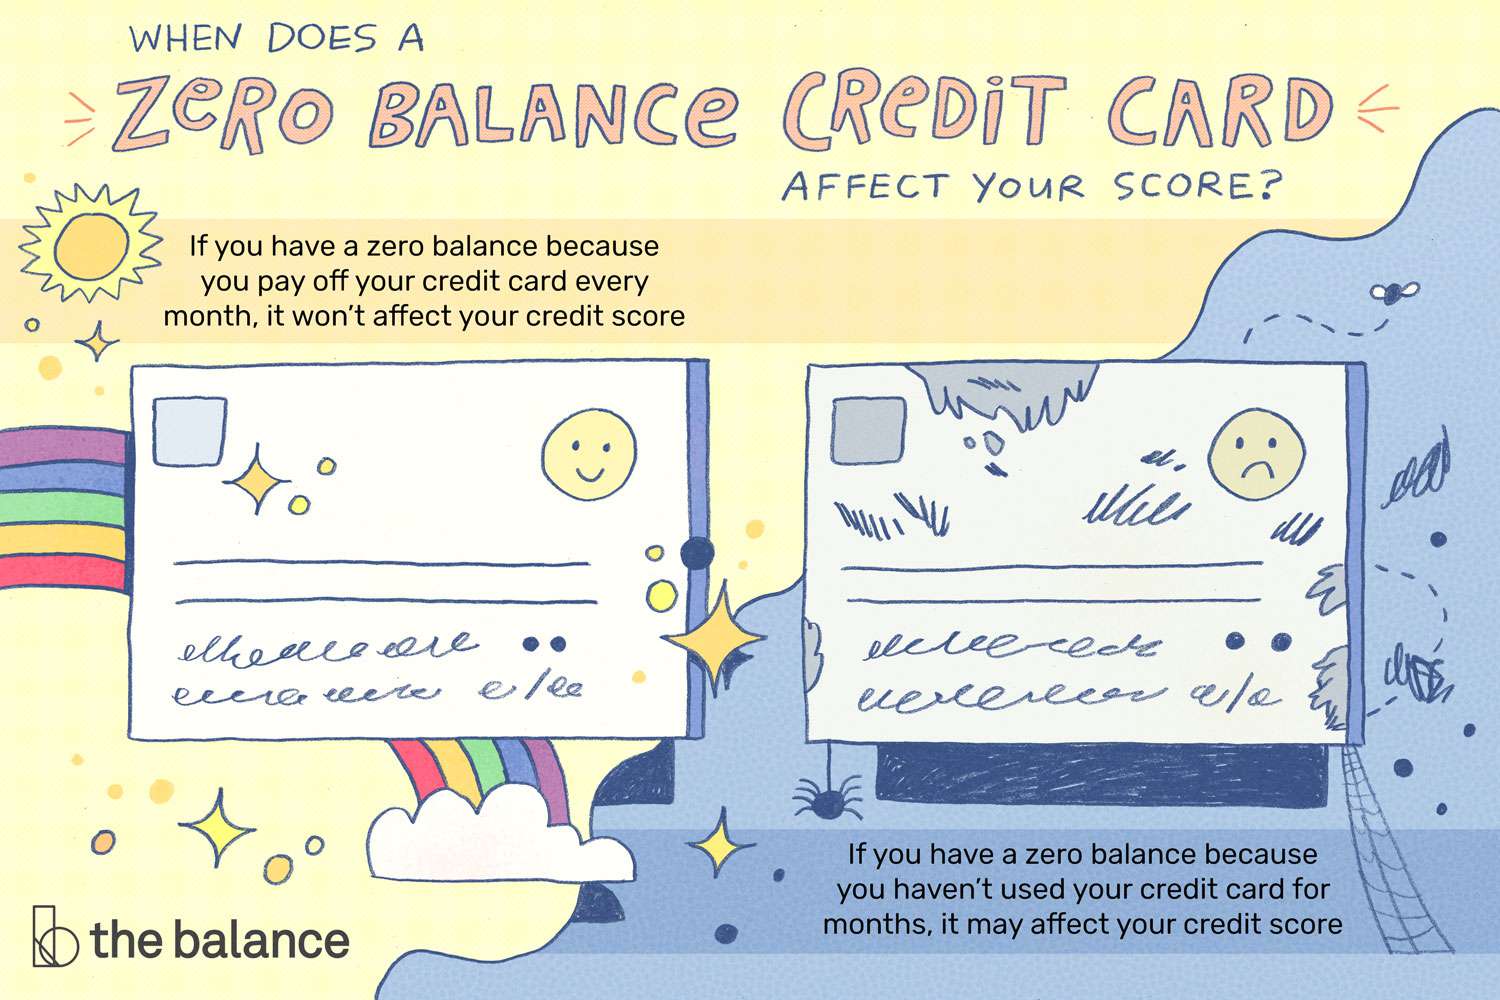 图片显示了两张信用卡，一张是一张快乐的脸和彩虹，另一张是一张悲伤的脸和蜘蛛网。上面写着:“零余额信用卡什么时候会影响你的分数?如果你的信用卡余额为零是因为你每个月都还钱，这不会影响你的信用评分。如果你的信用卡余额为零，因为你已经几个月没用过信用卡了，这可能会影响你的信用评分。”＂class=